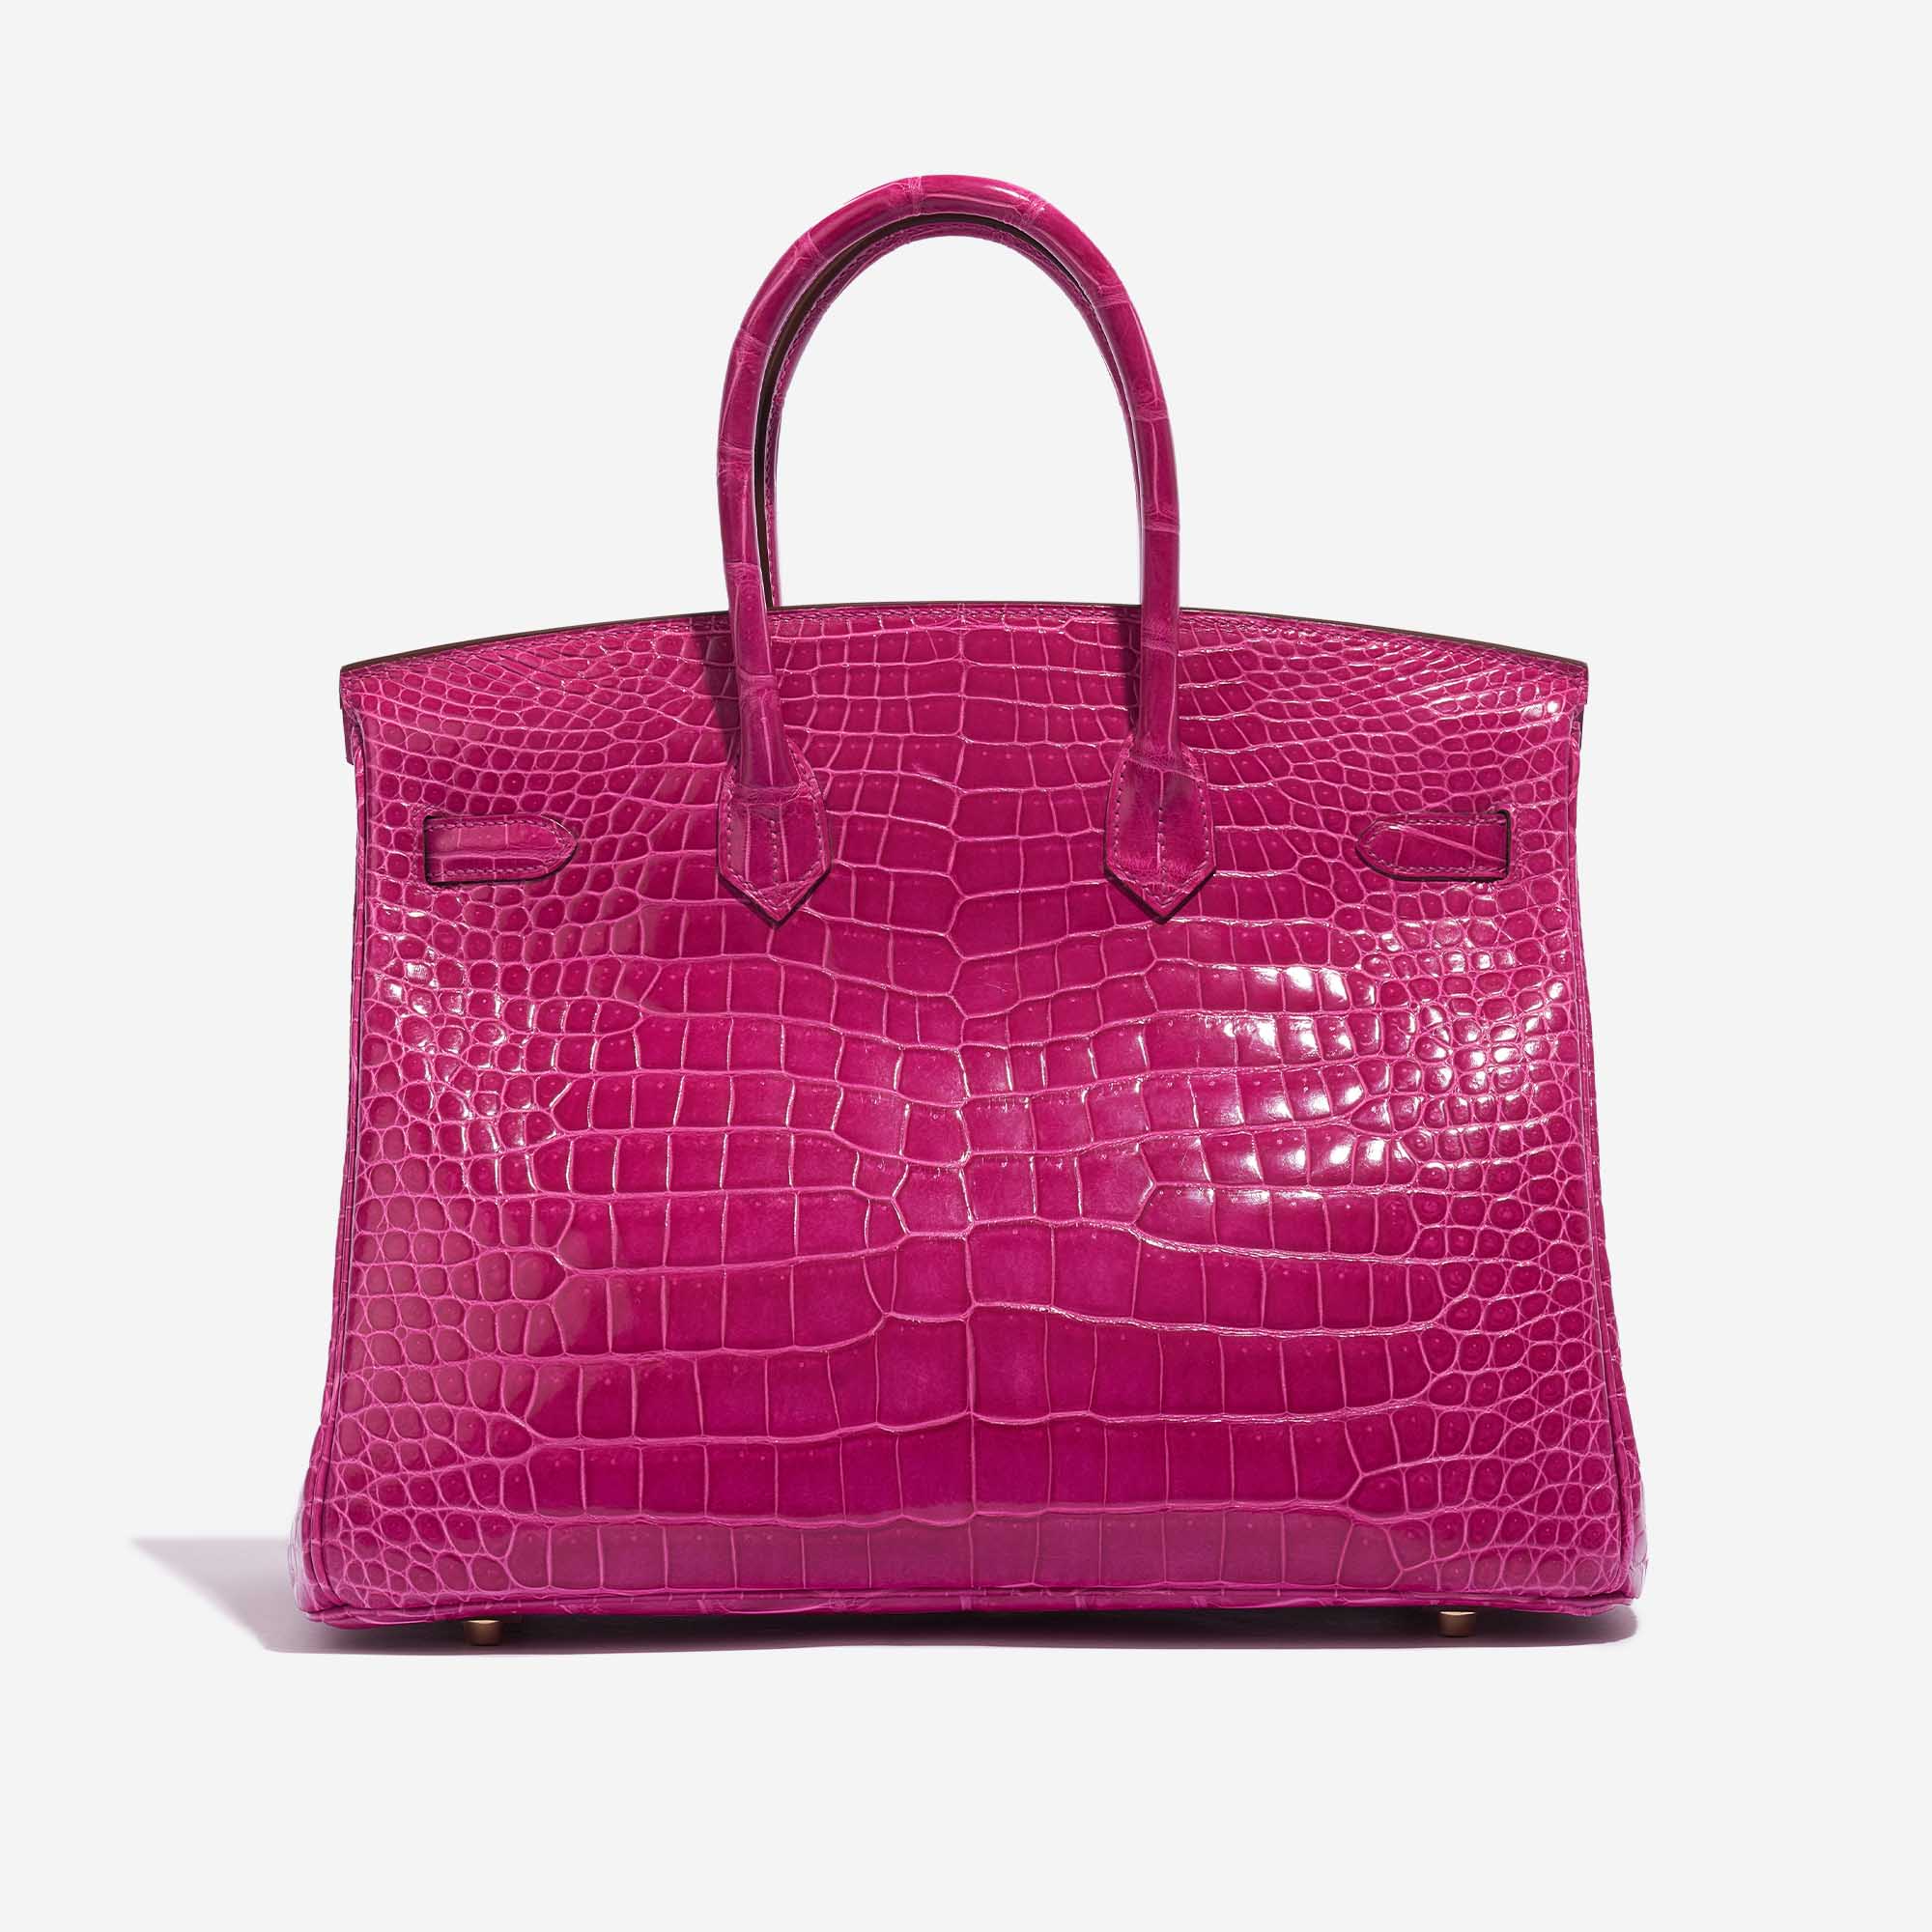 Pre-owned Hermès Tasche Birkin 35 Porosus Crocodile Rose Scheherazade Pink Back | Verkaufen Sie Ihre Designer-Tasche auf Saclab.com